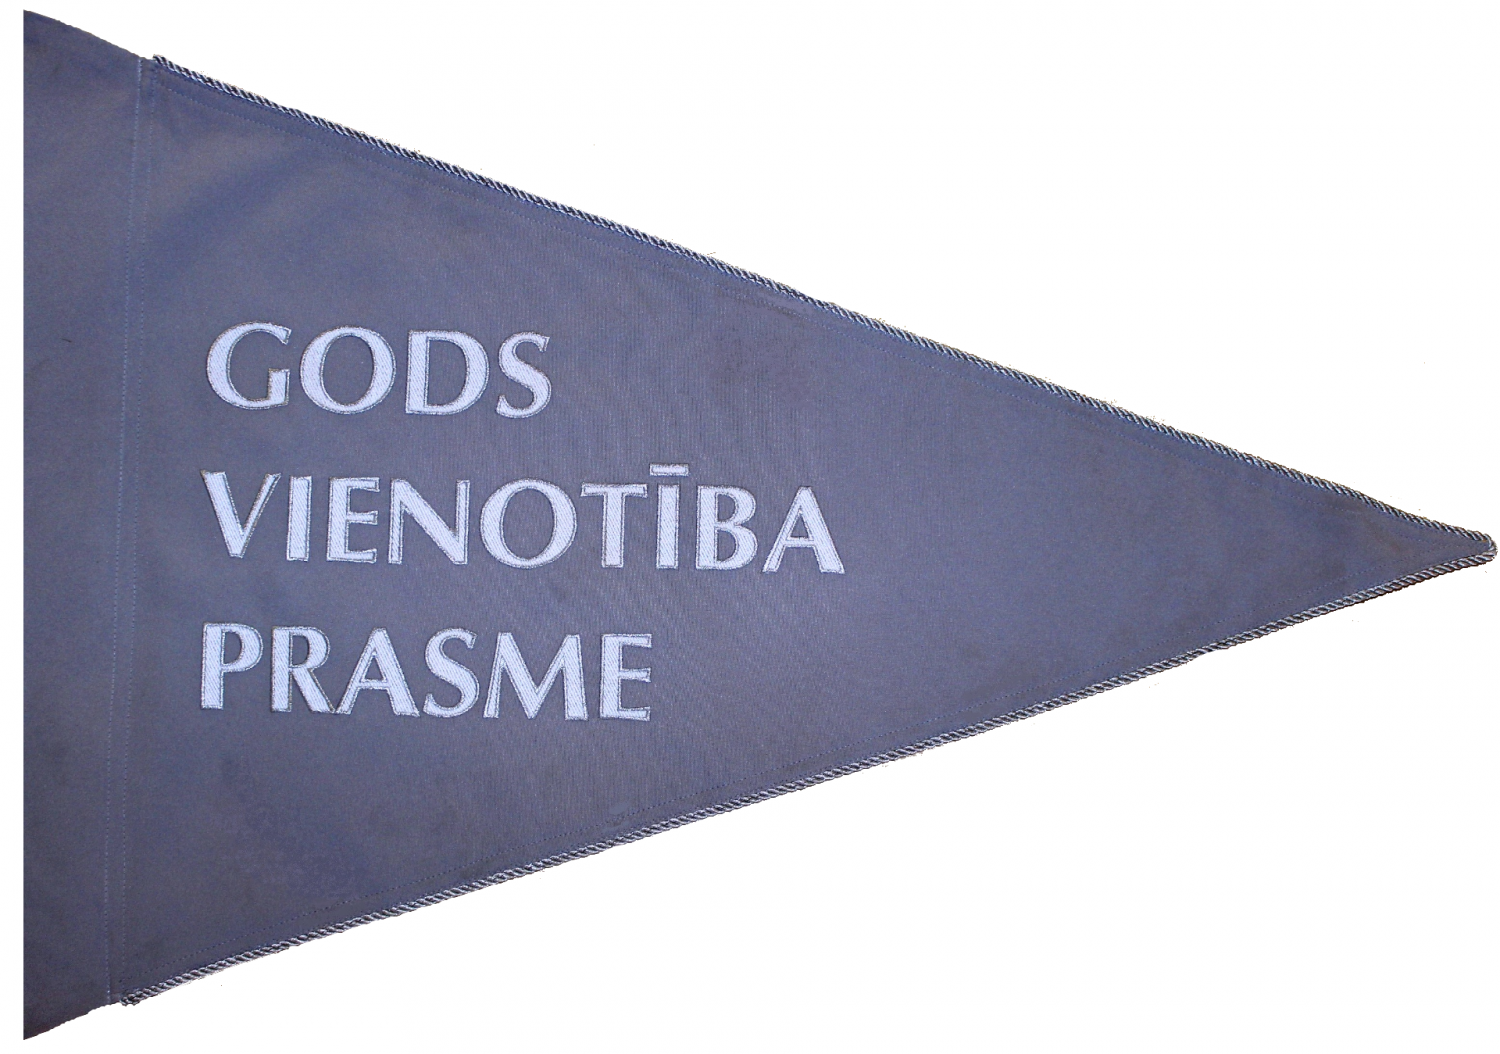 Standarts ir trīsstūra formā, zilā krāsā ar sudraba maliņu, centrā ir rakstīts "GODS VIENOTĪBA PRASME".